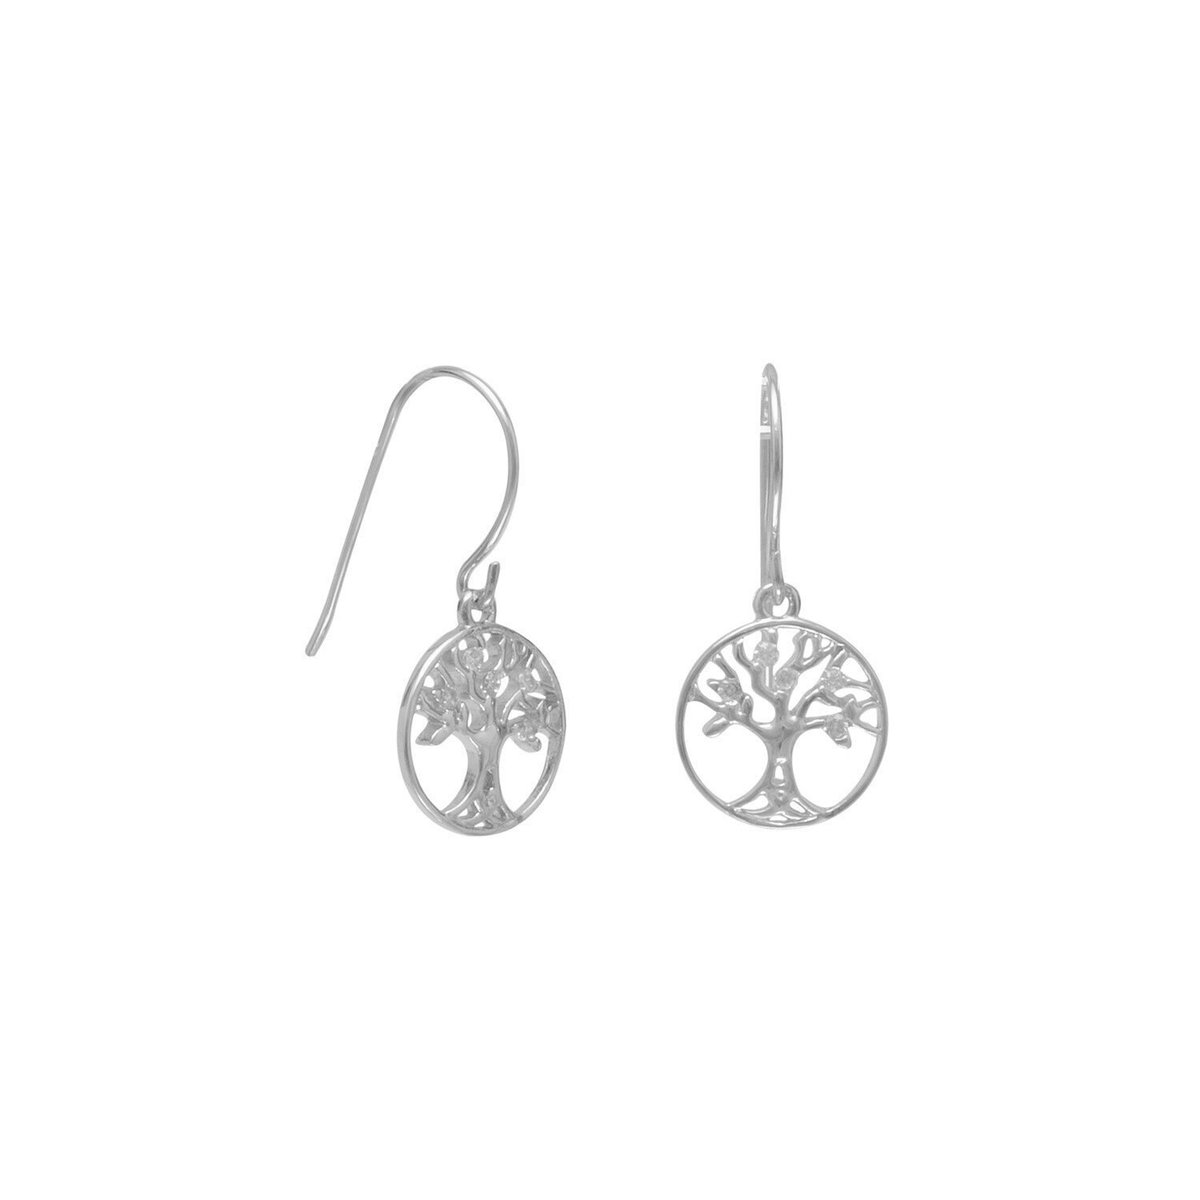 Earrings - Genuine 925 Sterling Silver French Wire Earrings with CZ Tree of Life Design Drop - Gift Earrings - Jewelry - Dangle Earrings tuppu.net/8c59e44a #jewelrymandave #Etsy #DangleEarrings